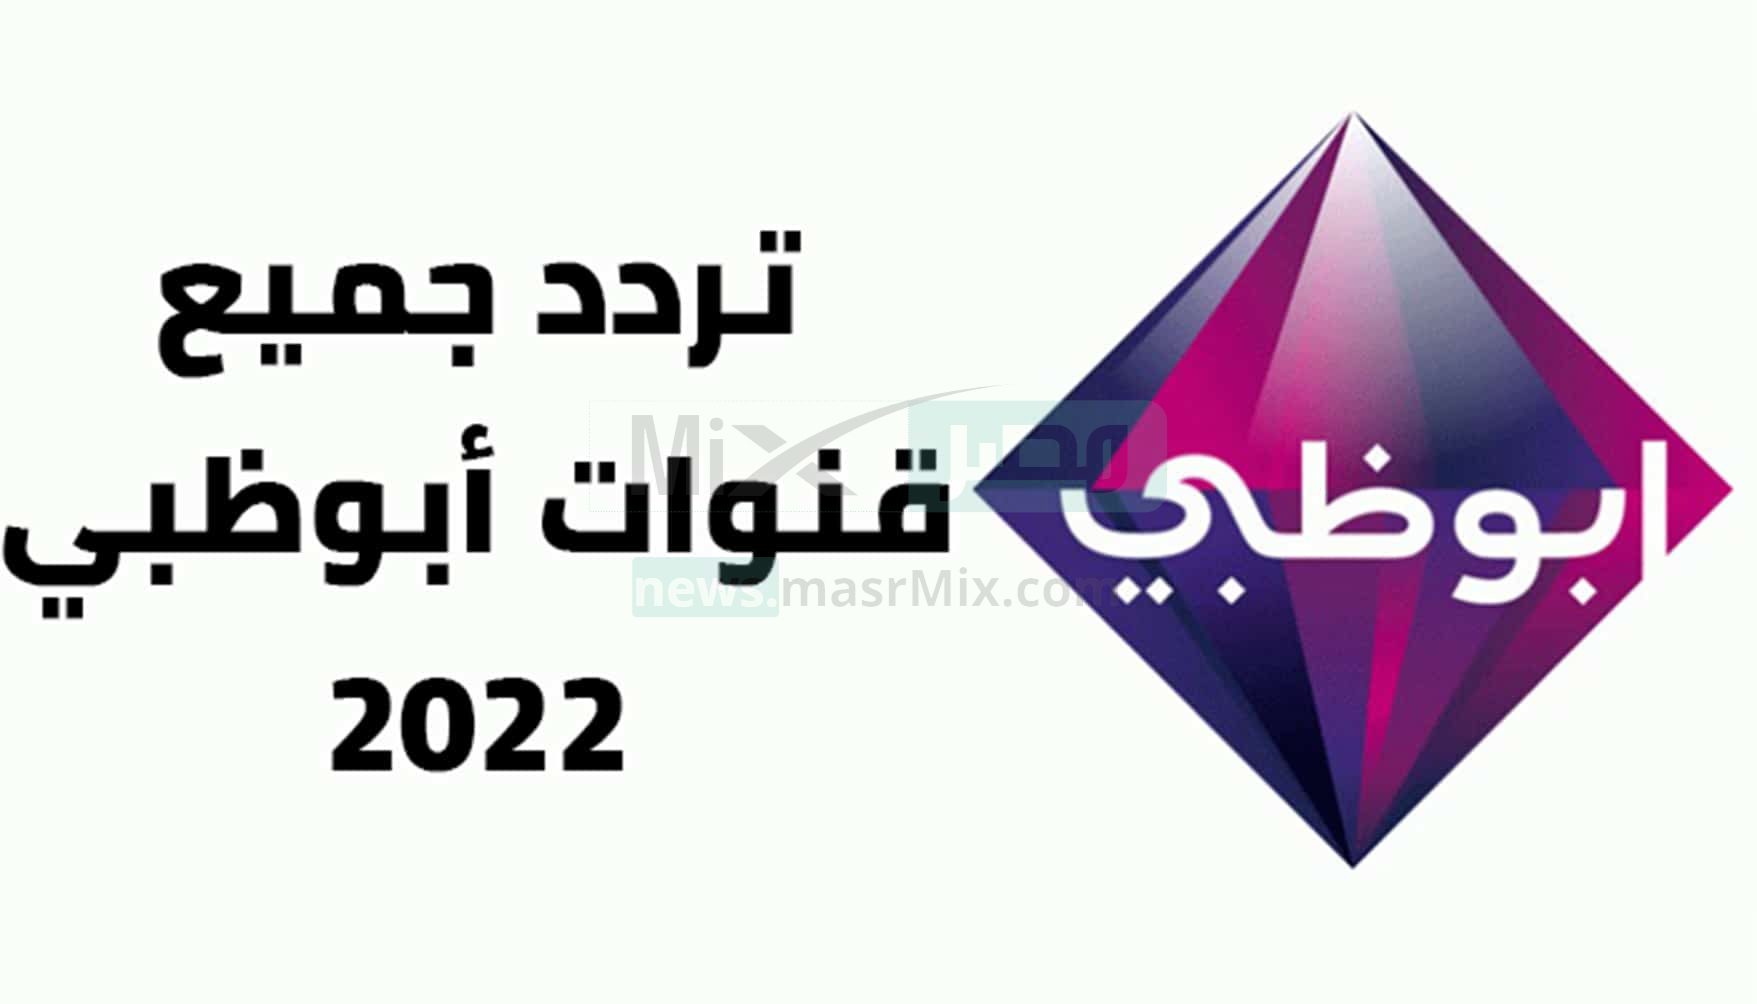 تردد قناة أبو ظبي الرياضيه نايل سات AD Sports 2022 وطريقة استقبالها nilesat 301